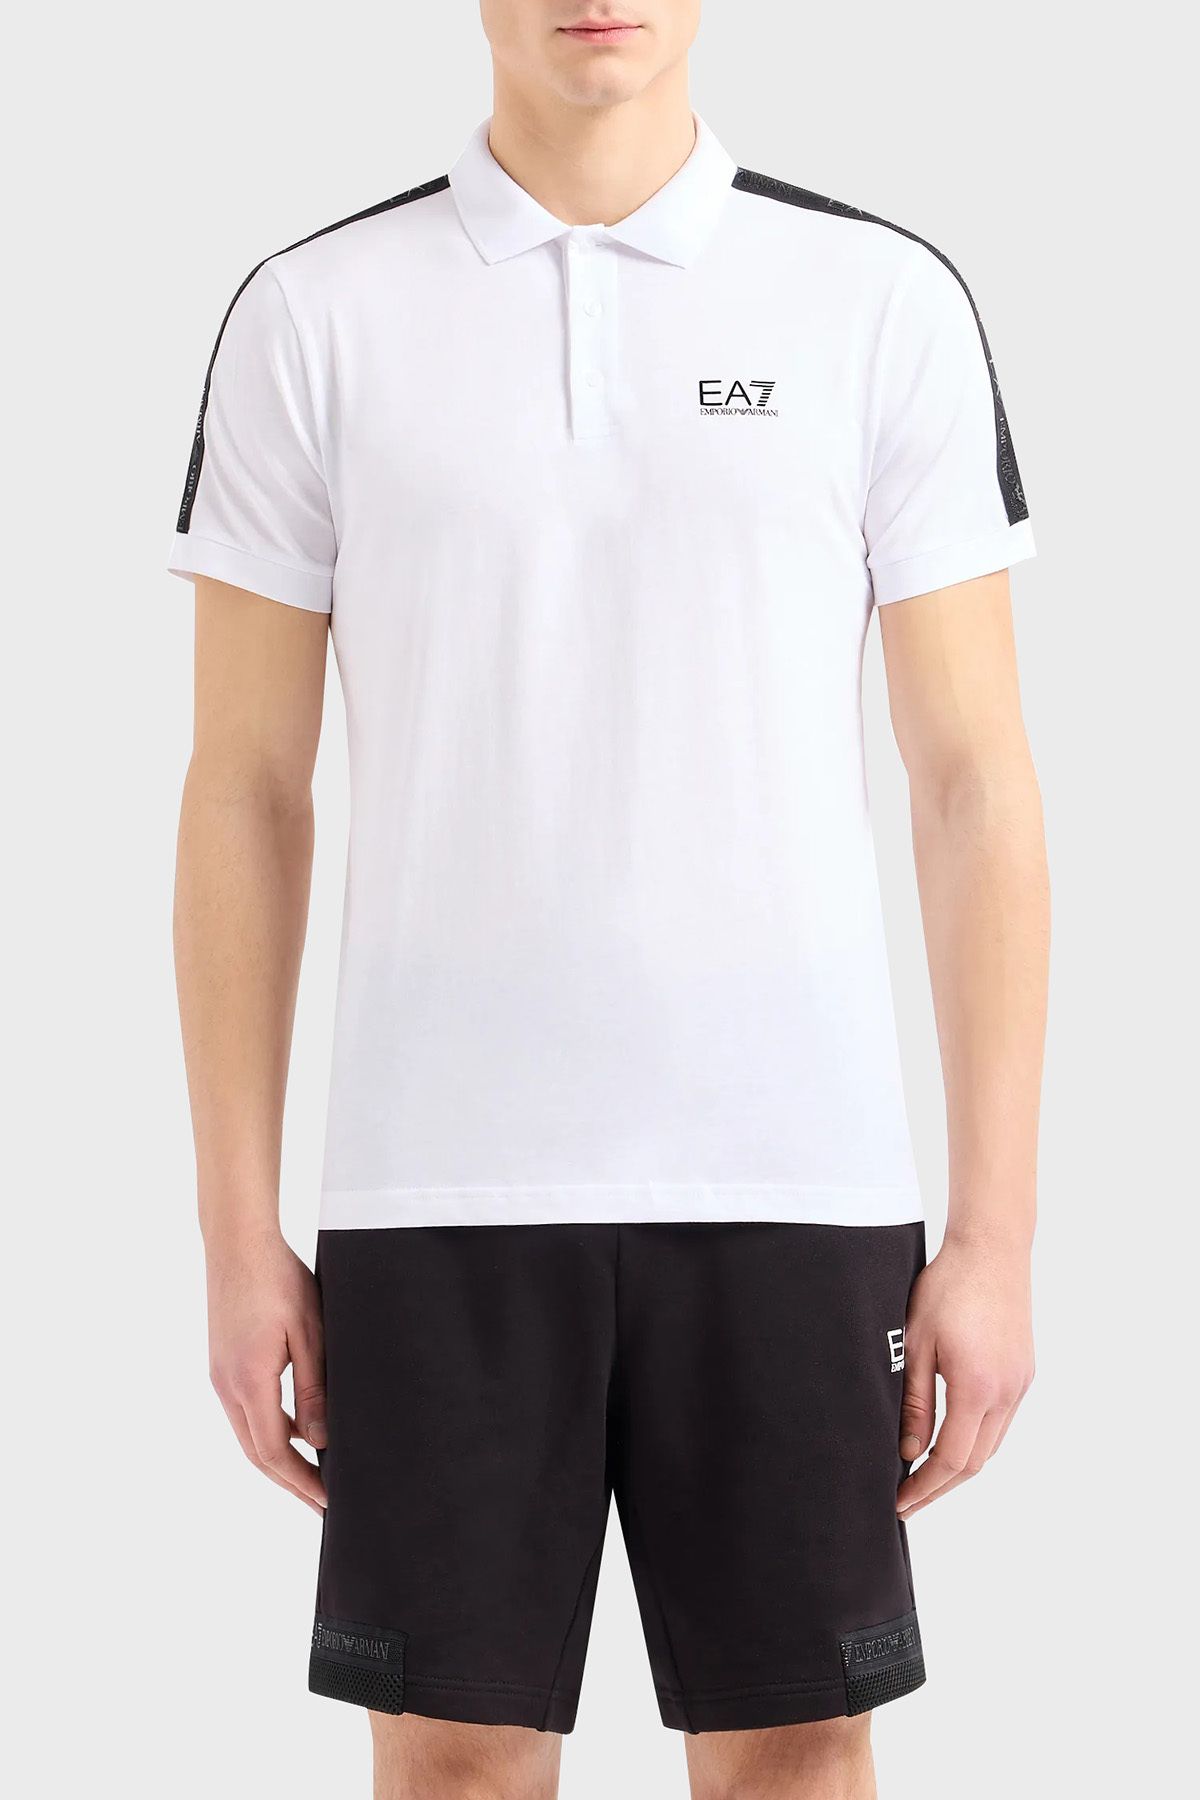 EA7 Pamuklu Regular Fit Polo Yaka T Shirt Erkek POLO YAKA T SHİRT 3DPF23 PJ02Z 1100